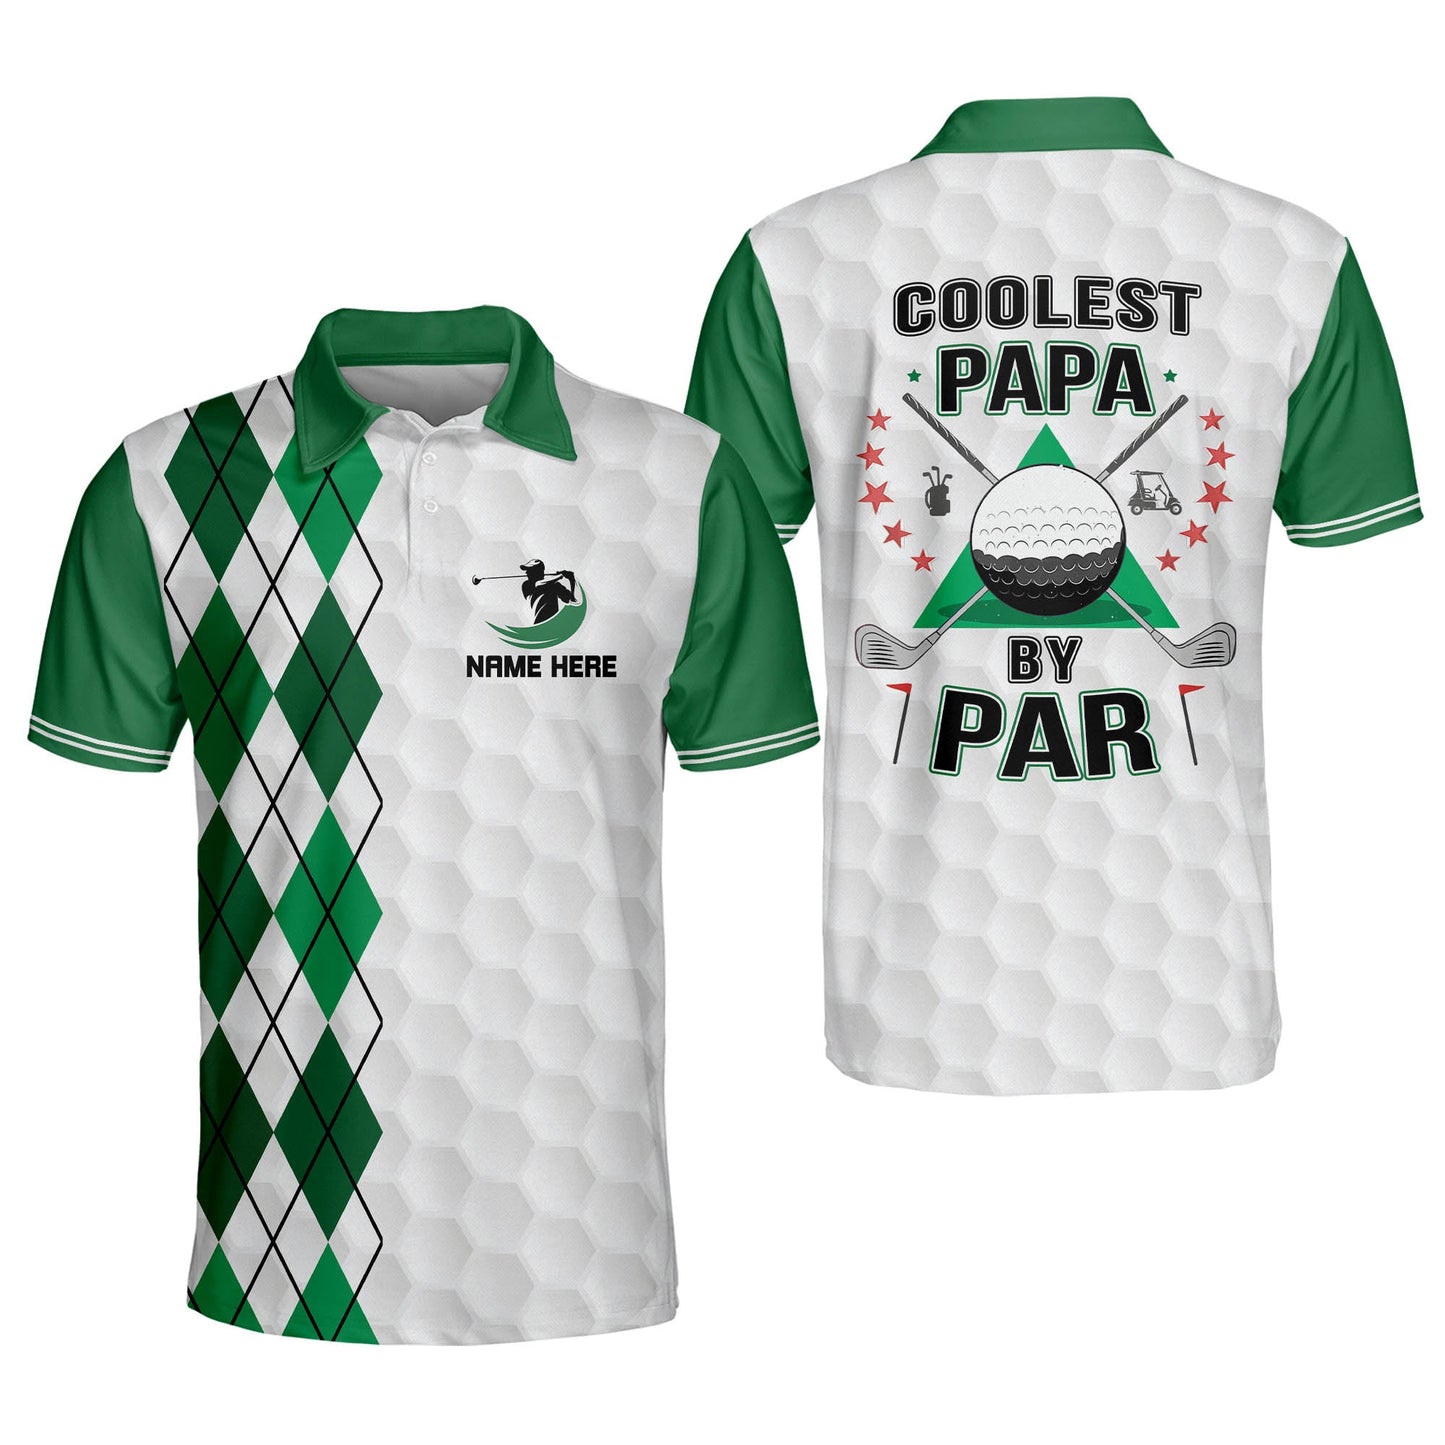 Coolest Papa by Par Golf Polo Shirt GM0283